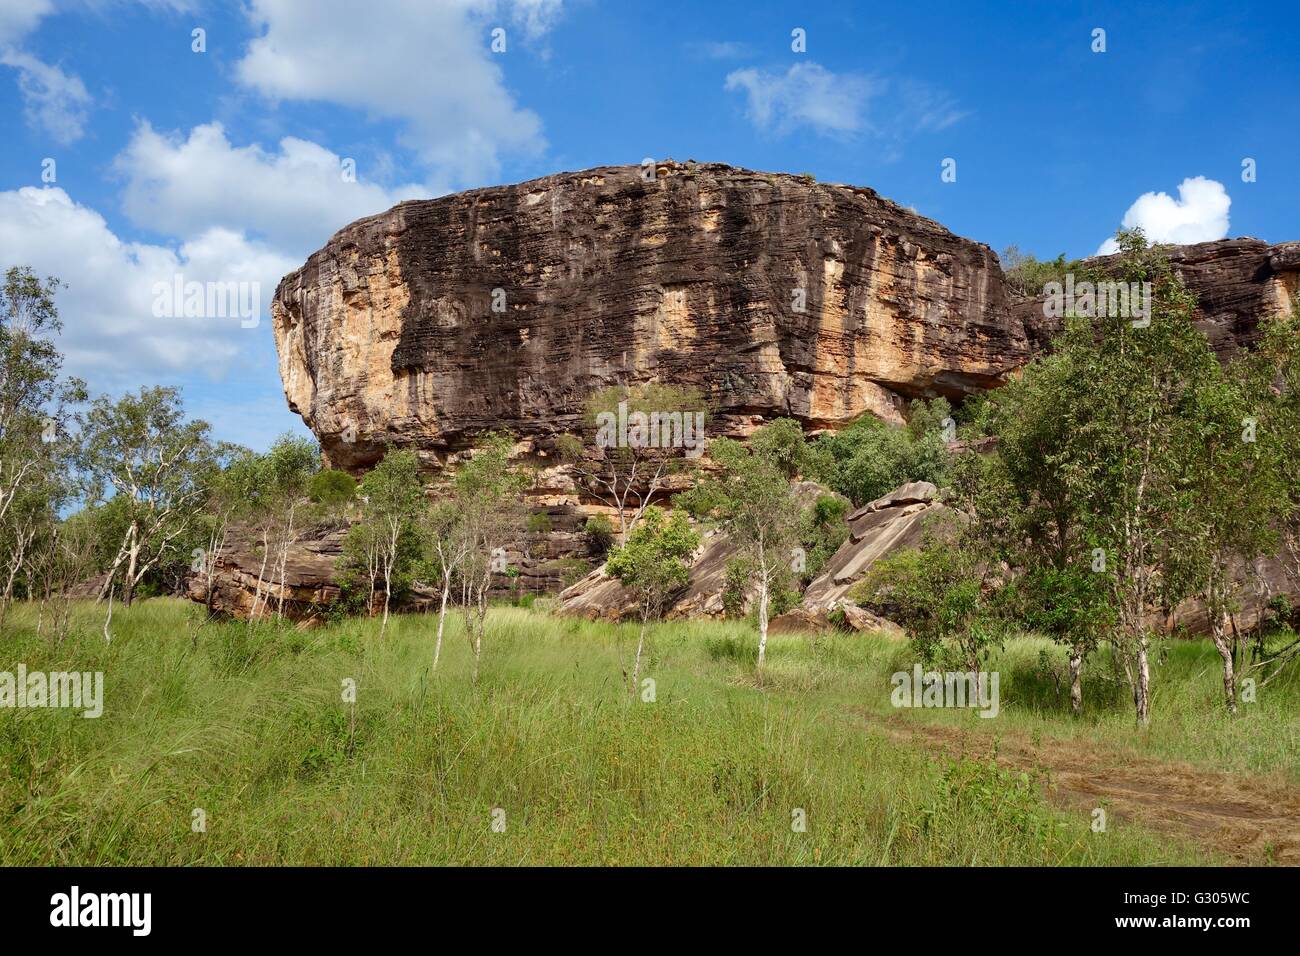 Blick auf die Felsen mit Höhlenmalereien, bekannt als die "alten Mannes Hand Site" in der Nähe von East Alligator River, West-Arnhemland, Australien Stockfoto